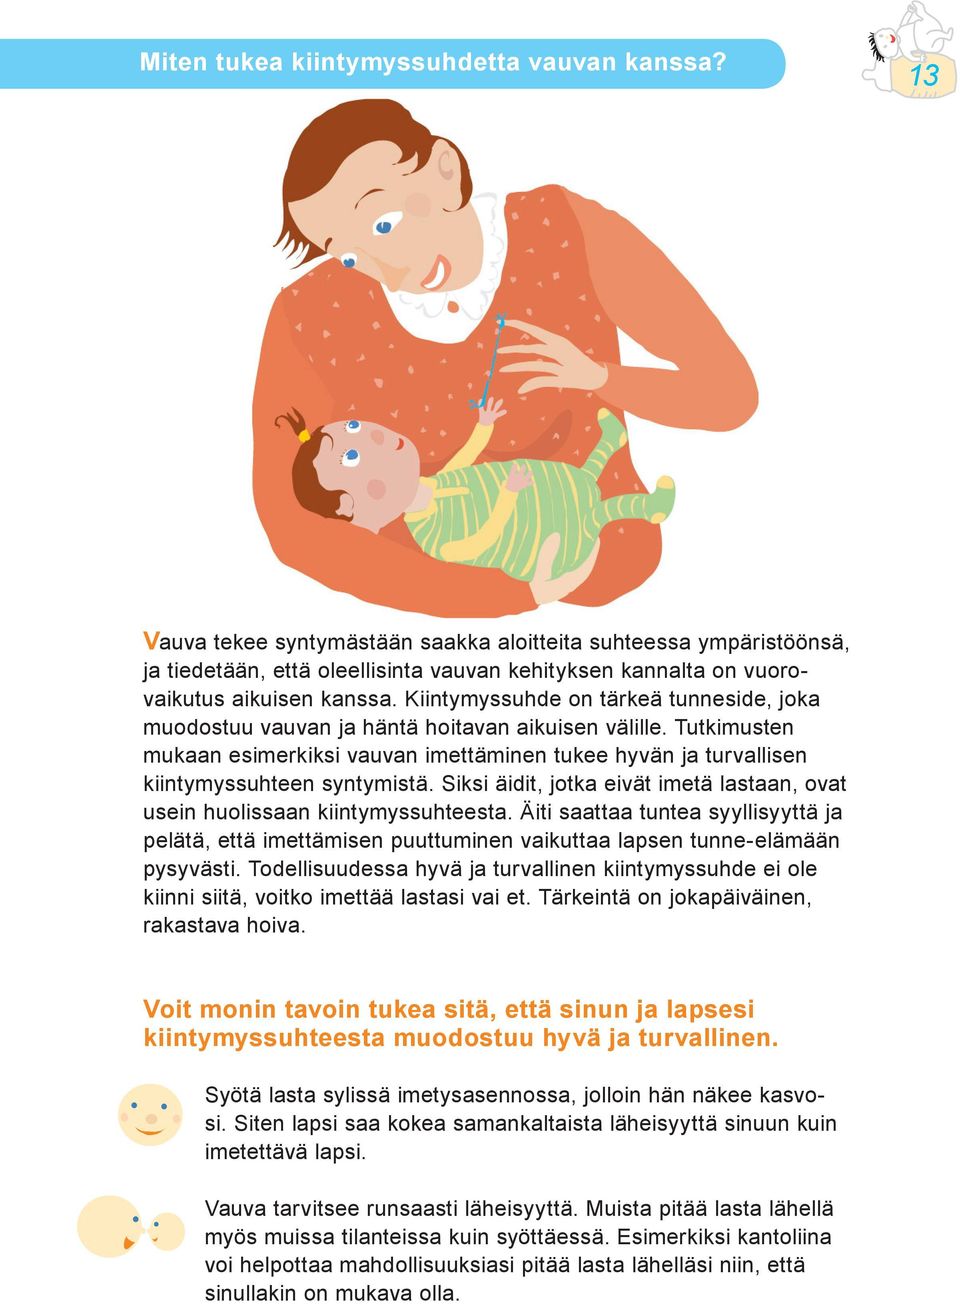 Kiintymyssuhde on tärkeä tunneside, joka muodostuu vauvan ja häntä hoitavan aikuisen välille. Tutkimusten mukaan esimerkiksi vauvan imettäminen tukee hyvän ja turvallisen kiintymyssuhteen syntymistä.